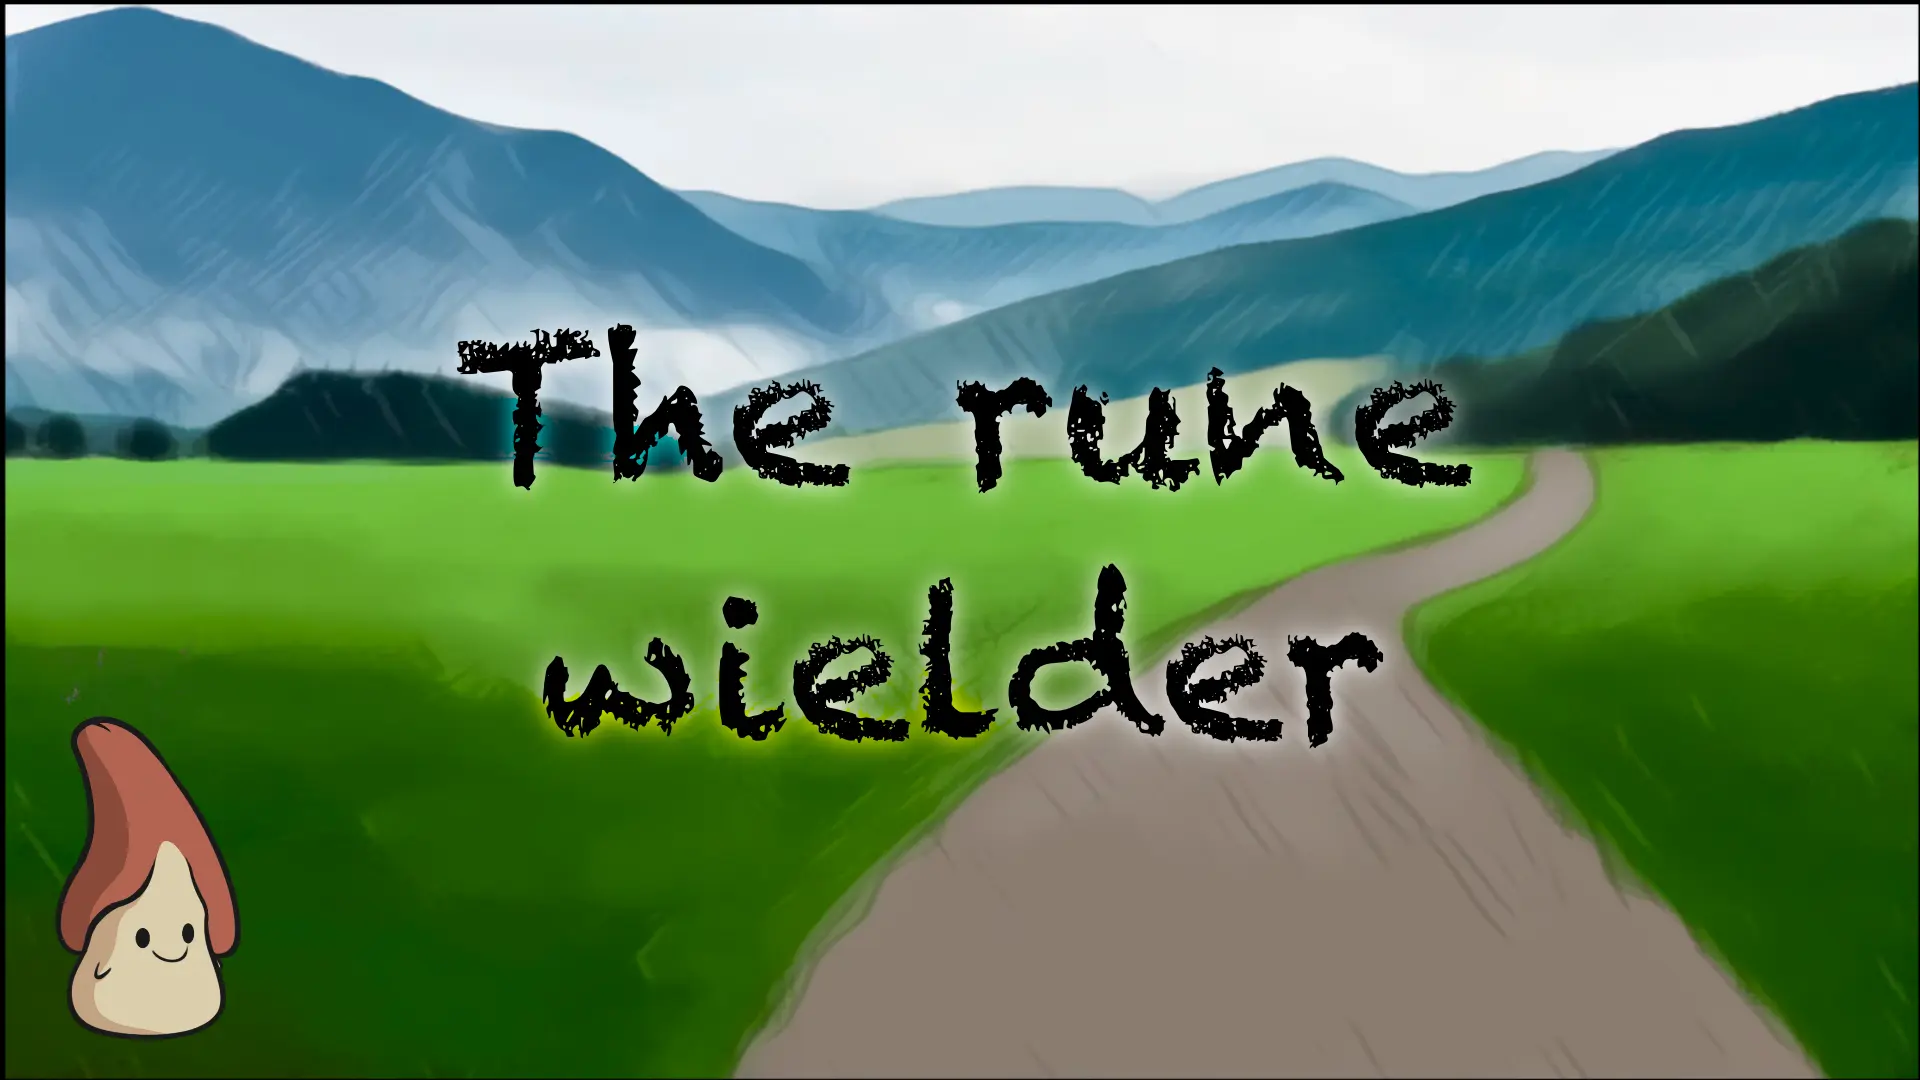 The Rune Wielder main image